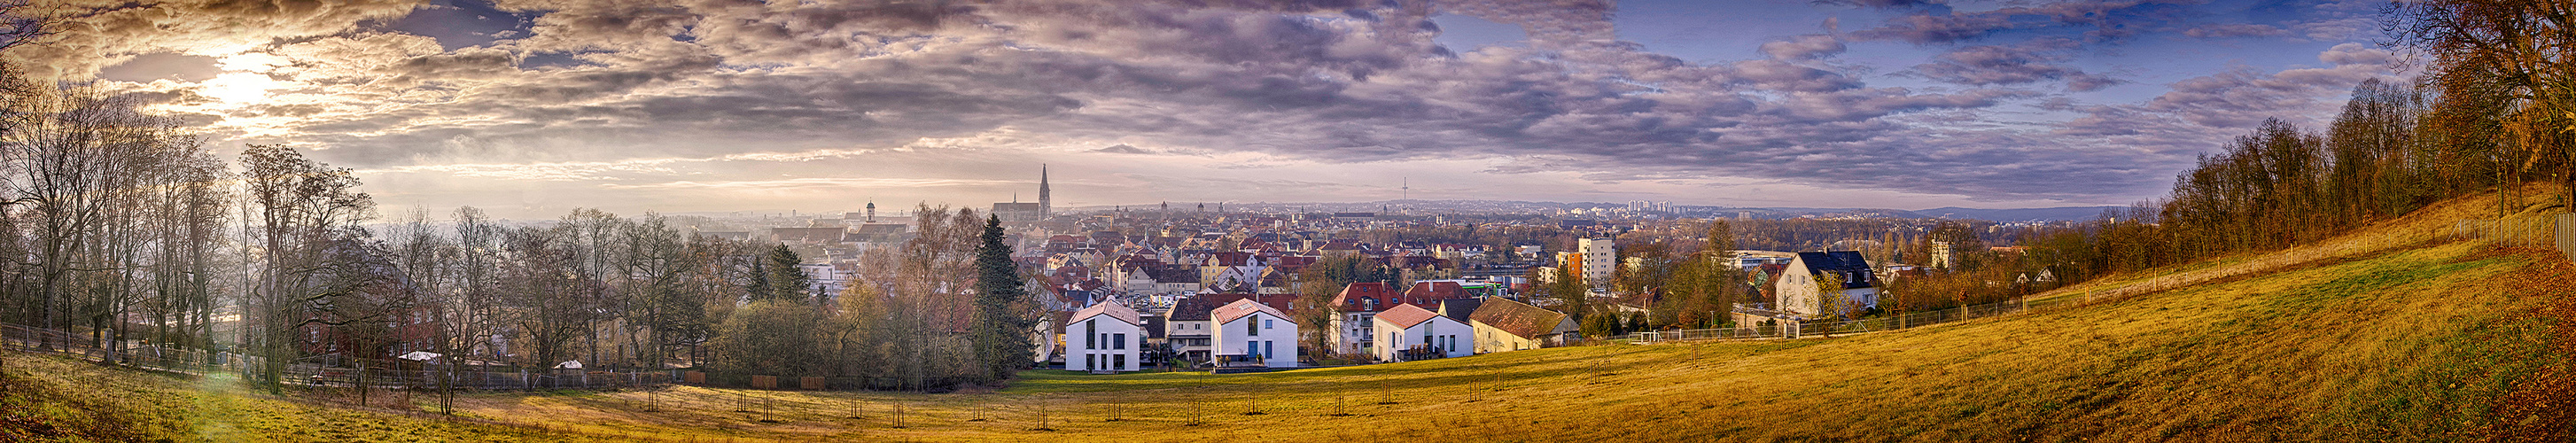 Regensburg Panorama II